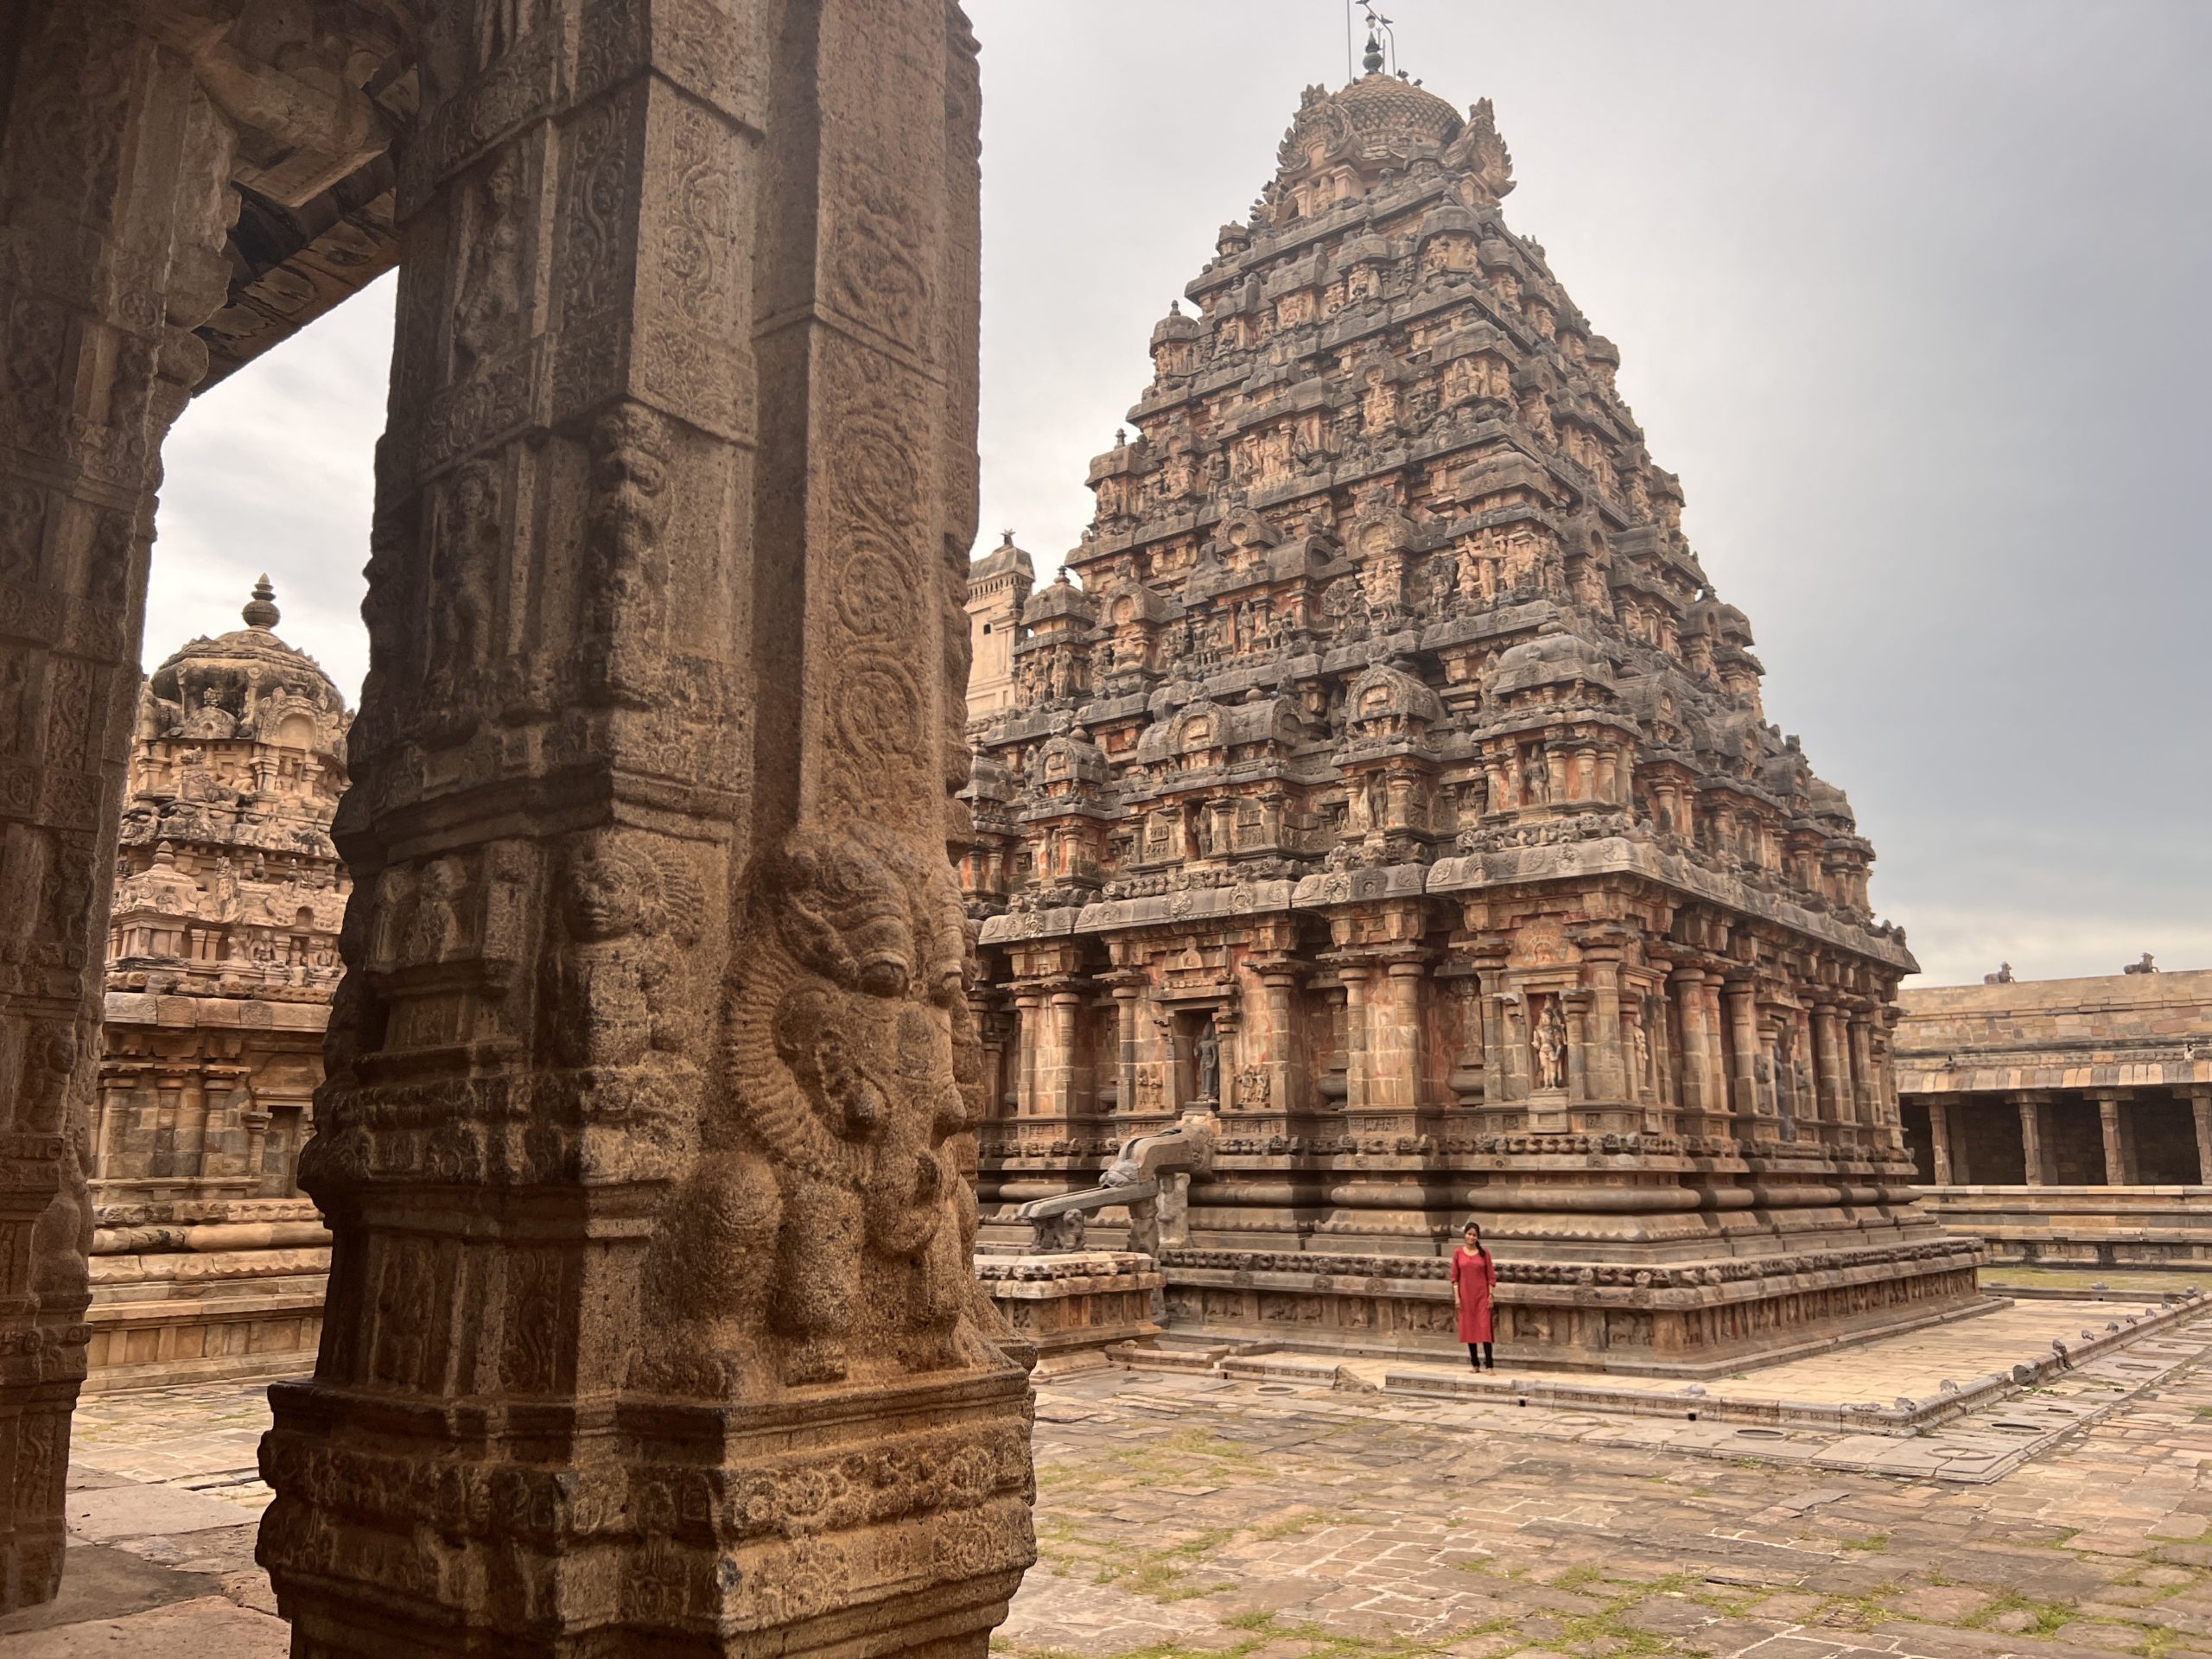 darasuram temple in tamil nadu